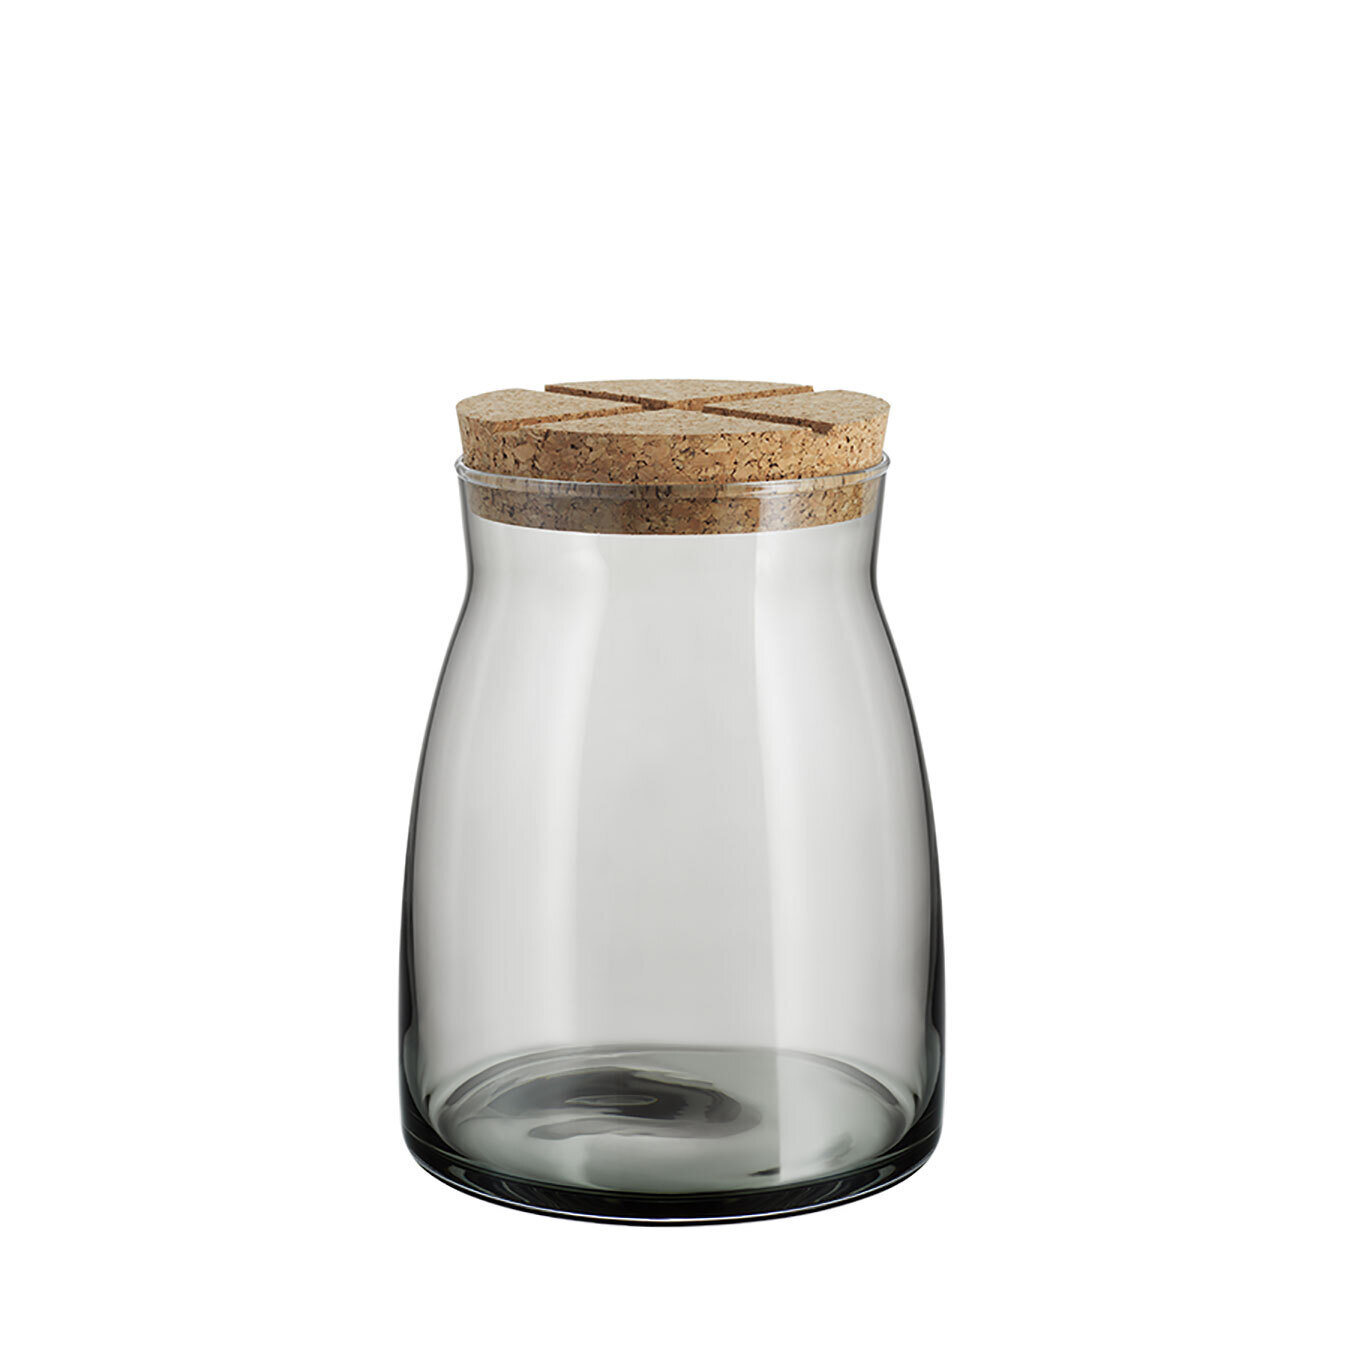 Kosta Boda Bruk Jar With Cork Grey Large 7051711